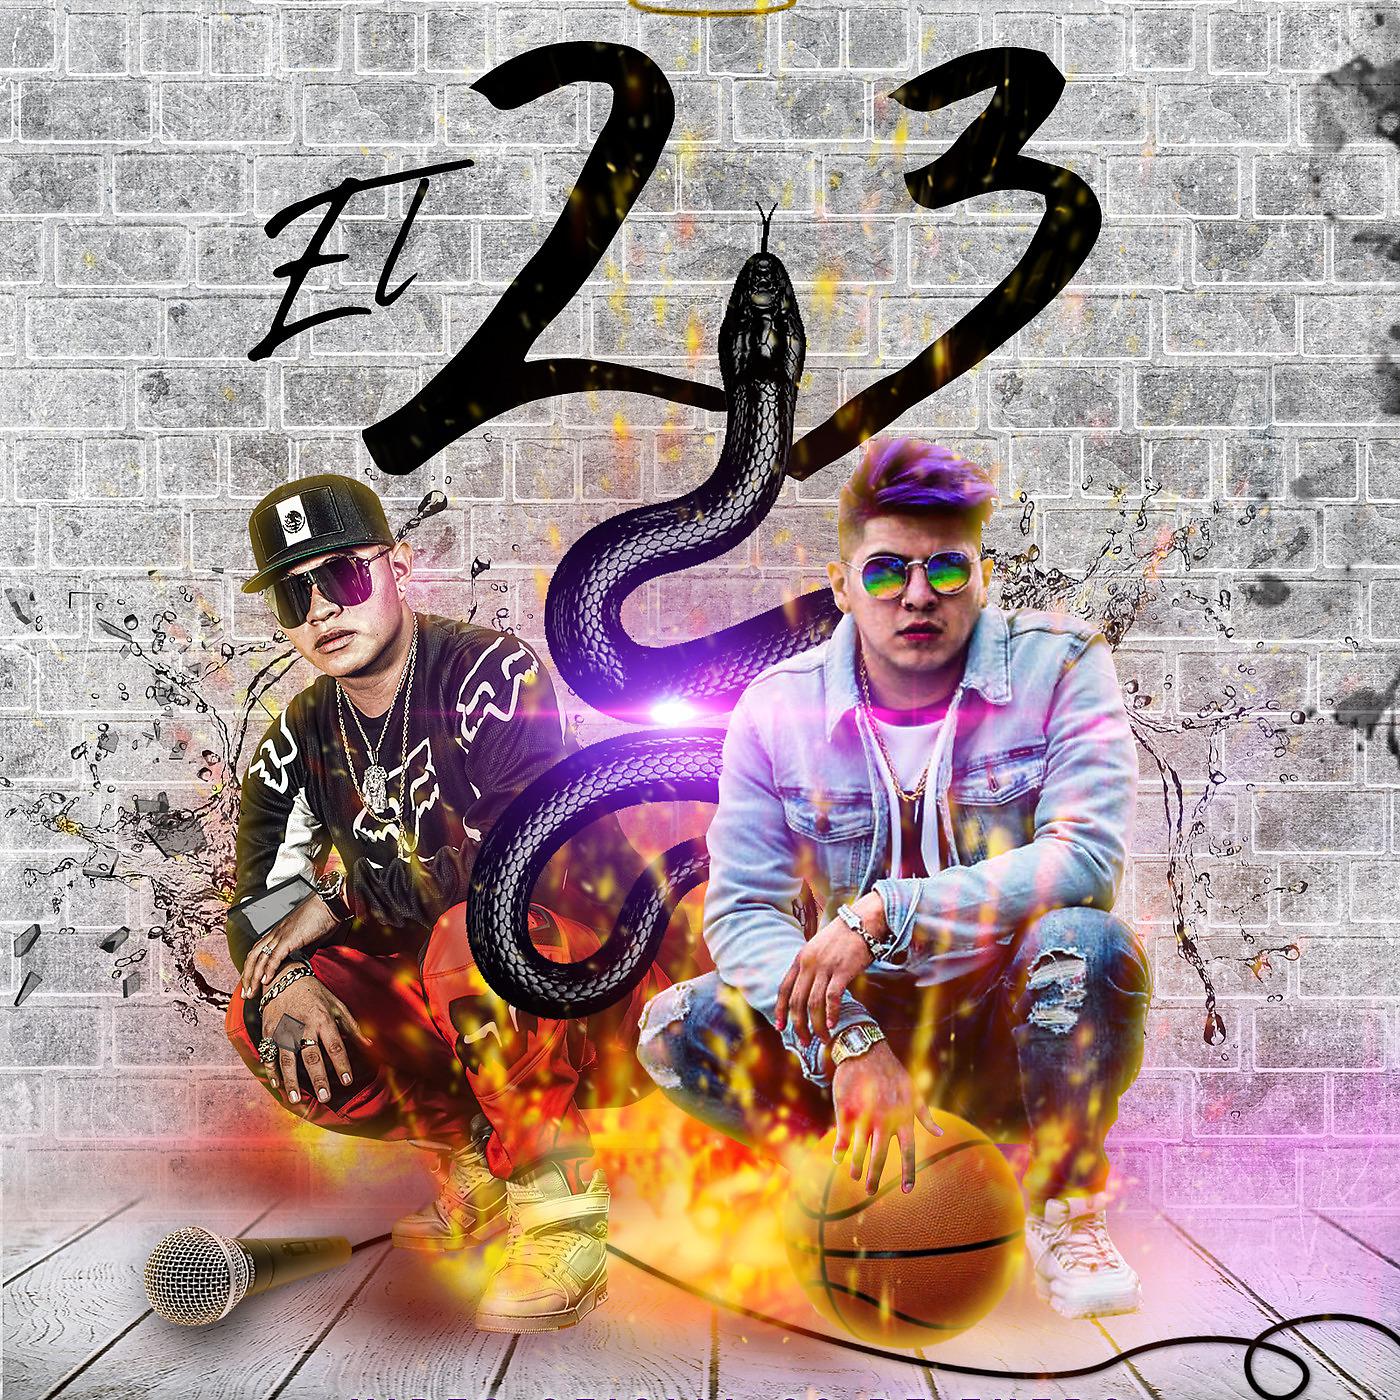 Постер альбома El 23